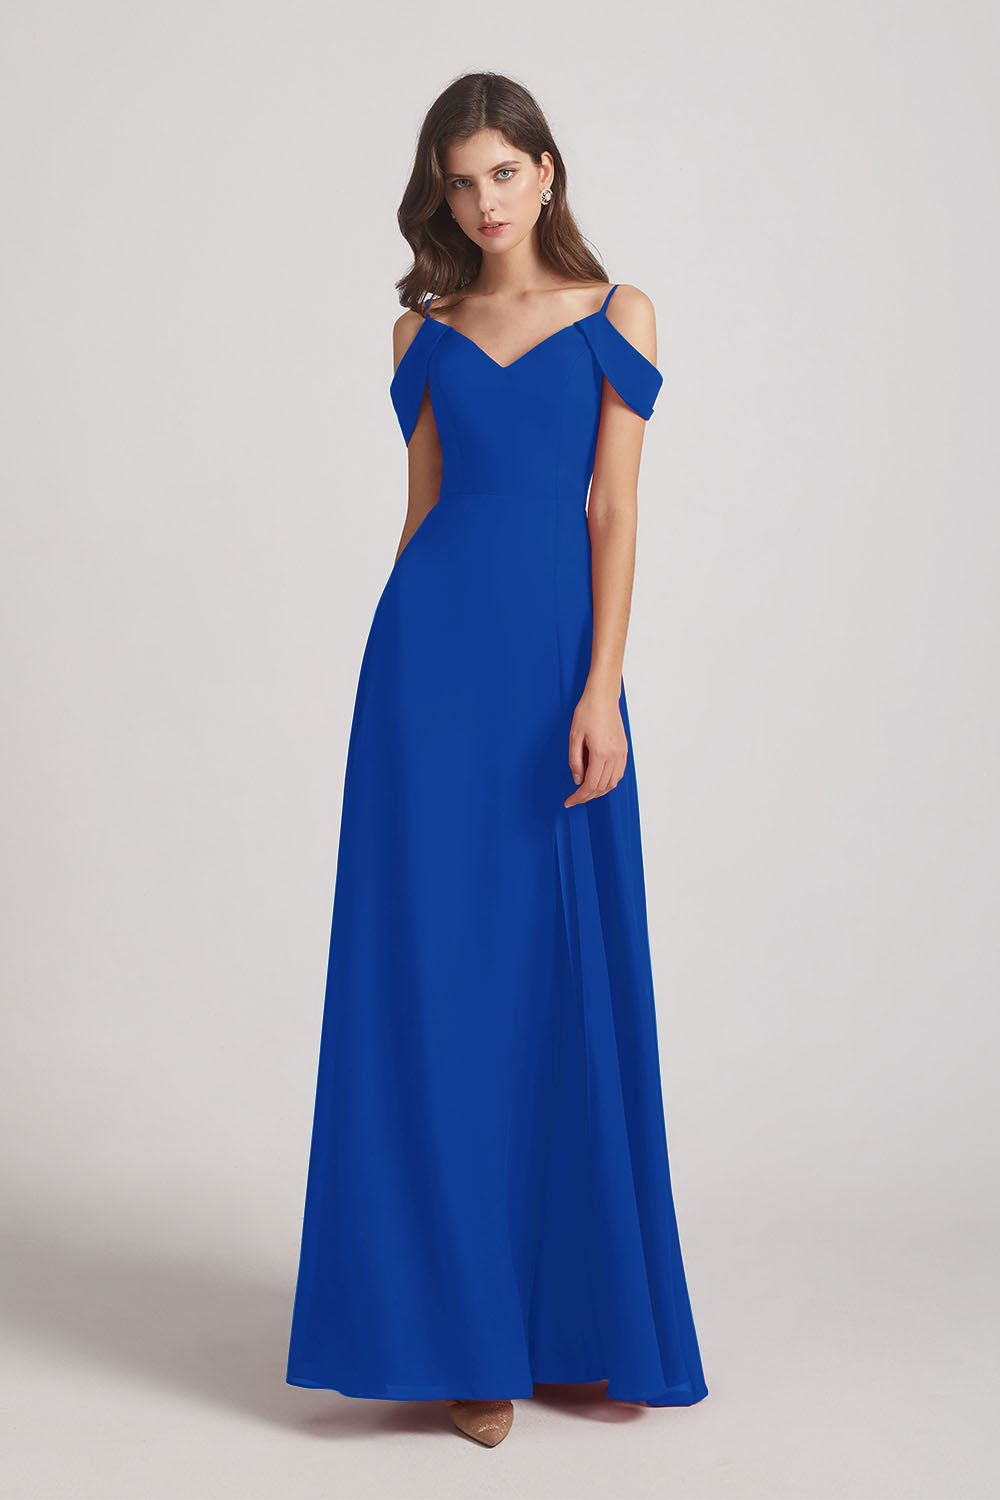 Alfa Bridal Royal Blue Chiffon Cold Shoulder V-Neck Bridesmaid Dresses with Slit (AF0093)